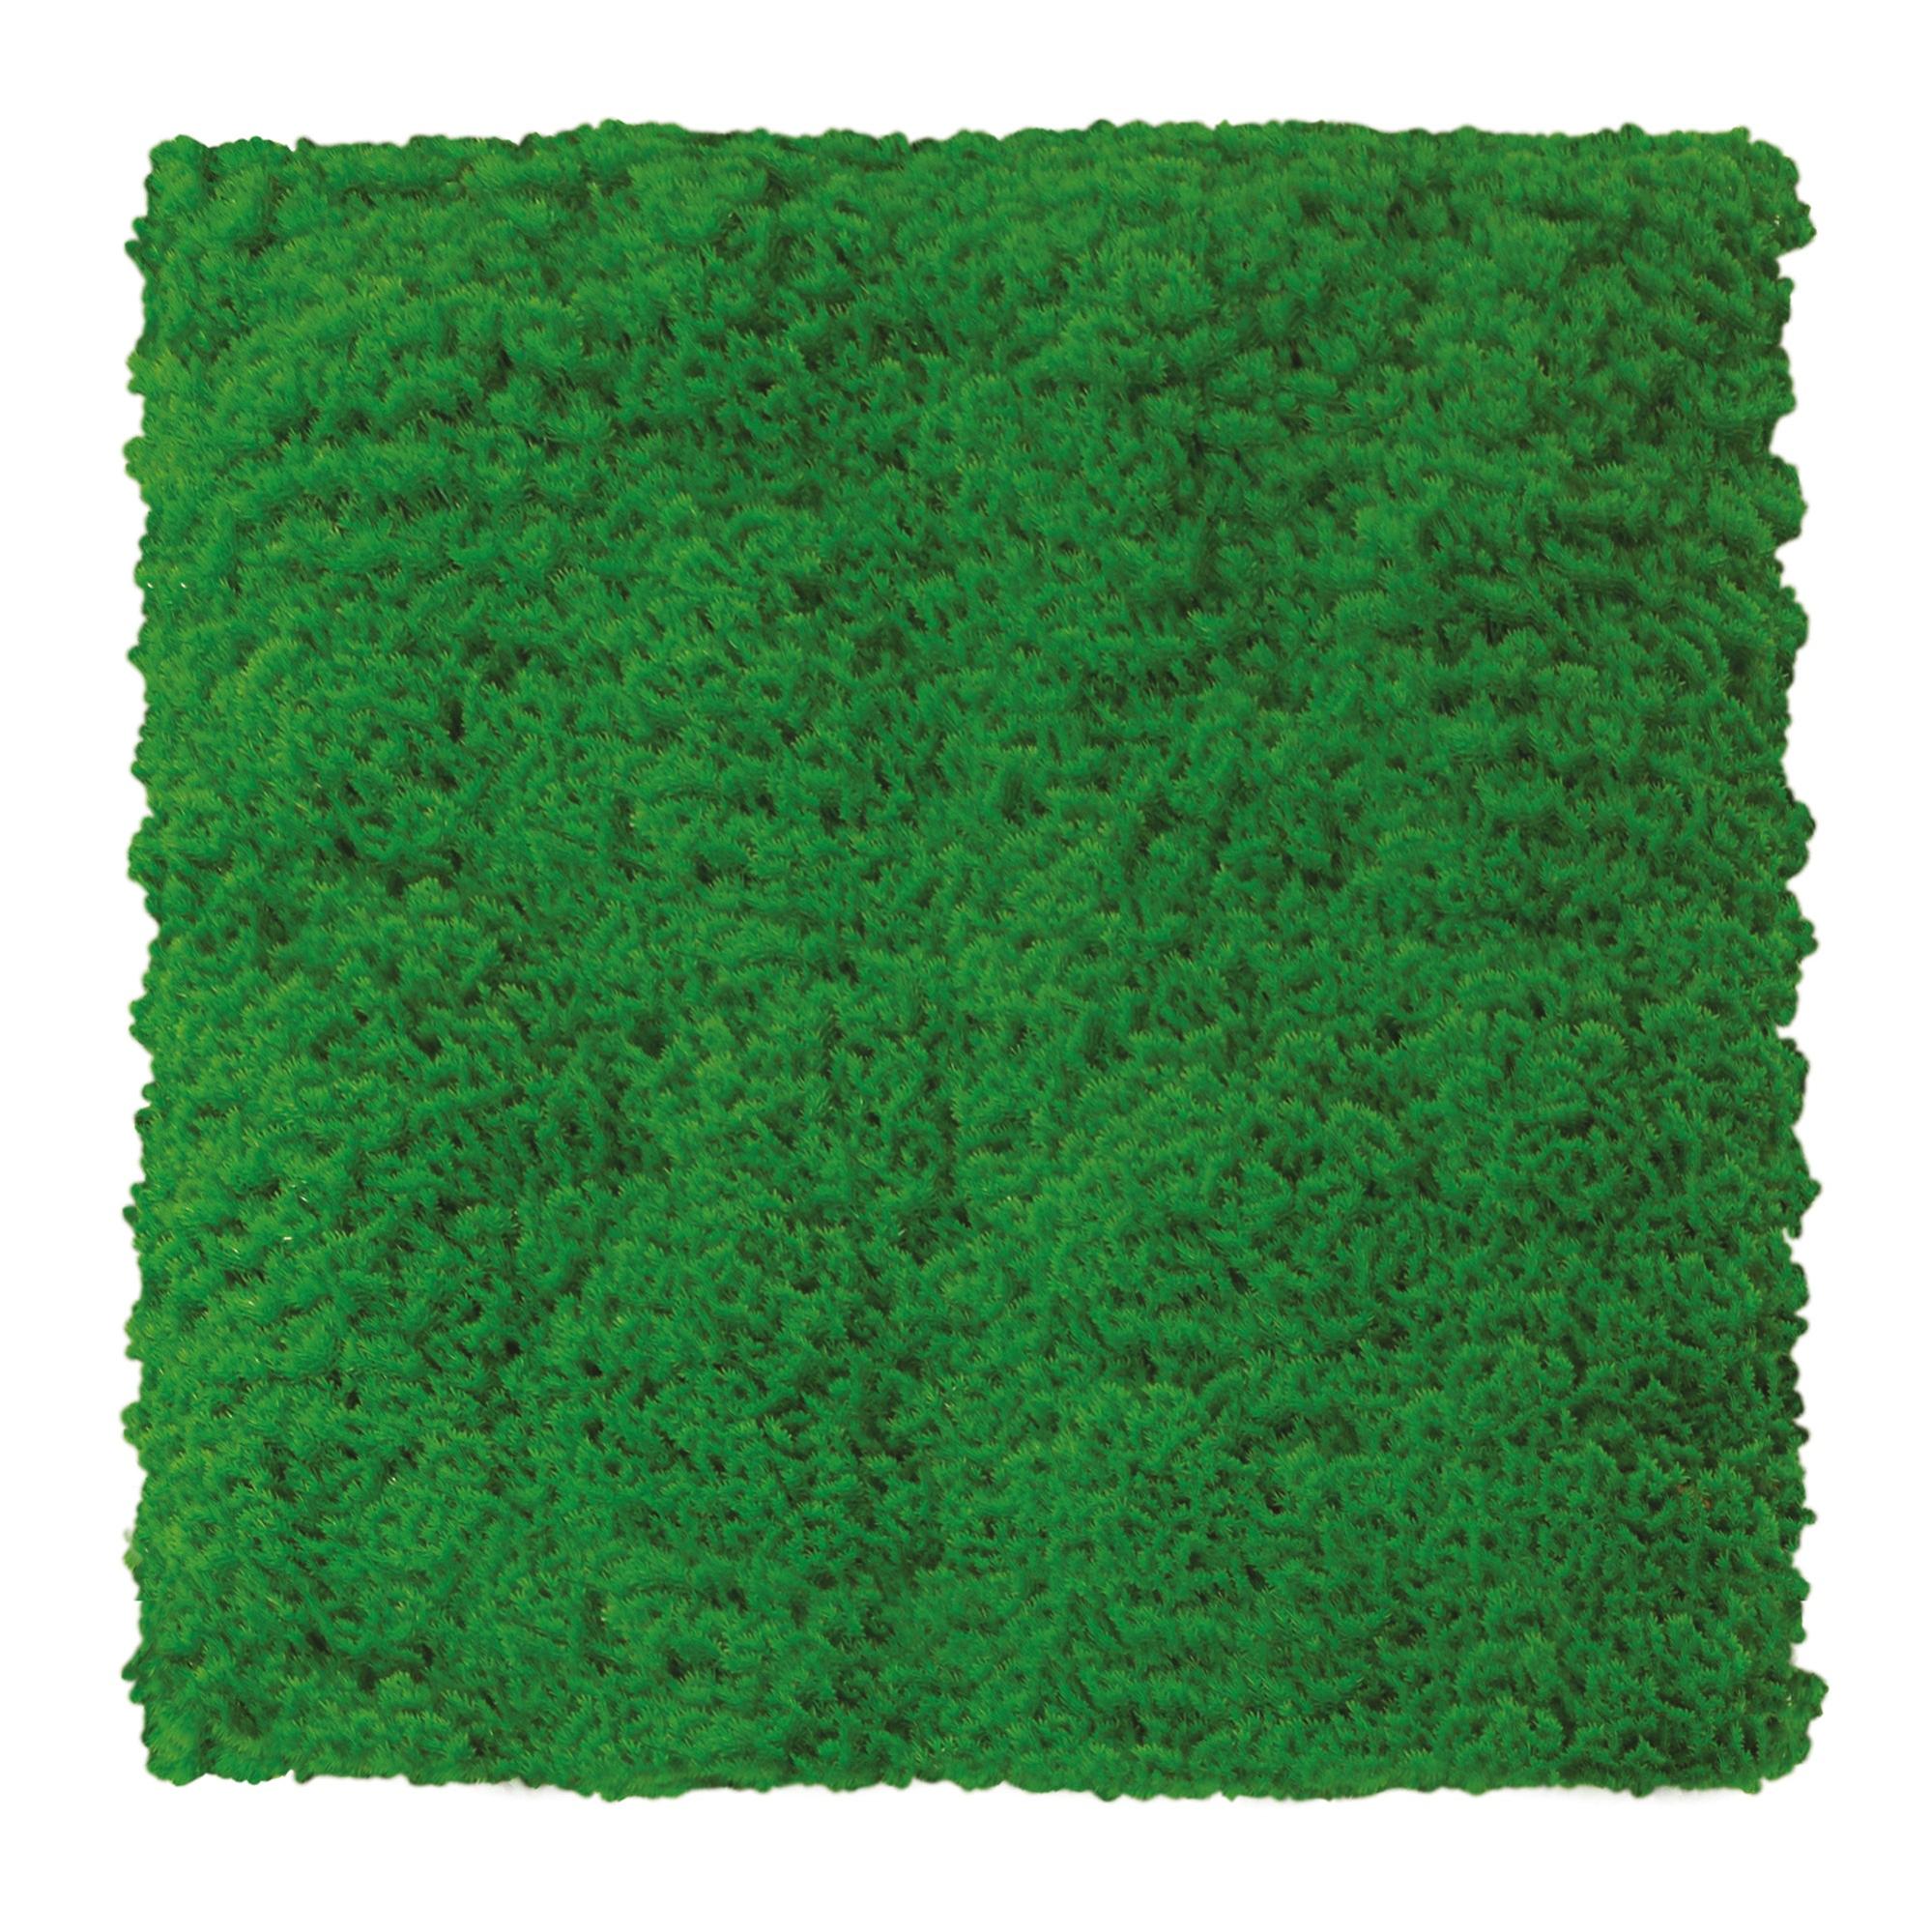 Siepe artificiale Muschio Divy 3D in polietilene, verde H 1 m x L 1 m